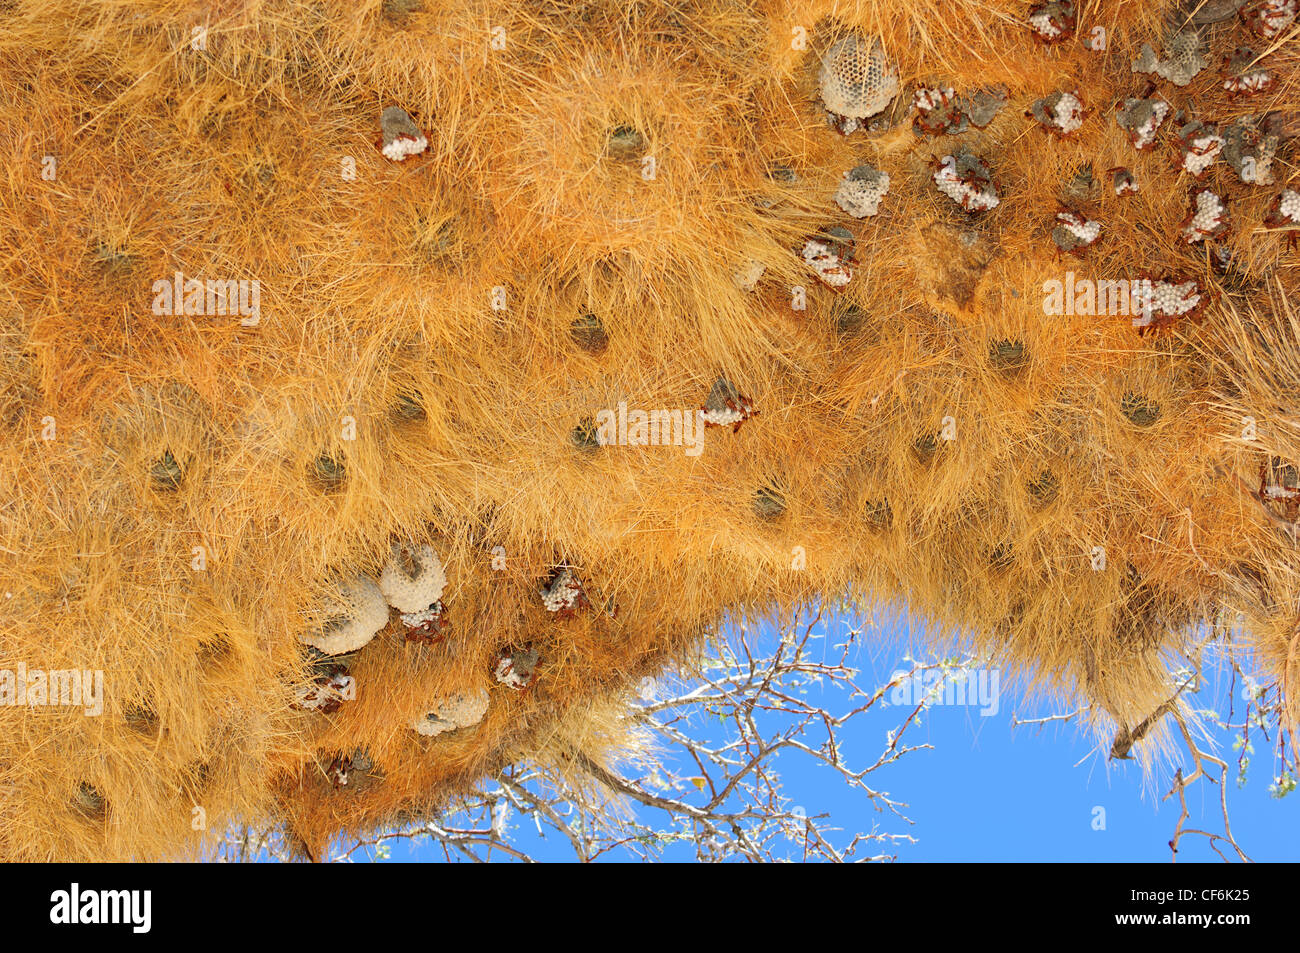 Nester der gesellig Weber (Philetairus Socius) bieten einen guten Schutz für rote Wespen nisten.  Namib-Wüste. Namibia Stockfoto